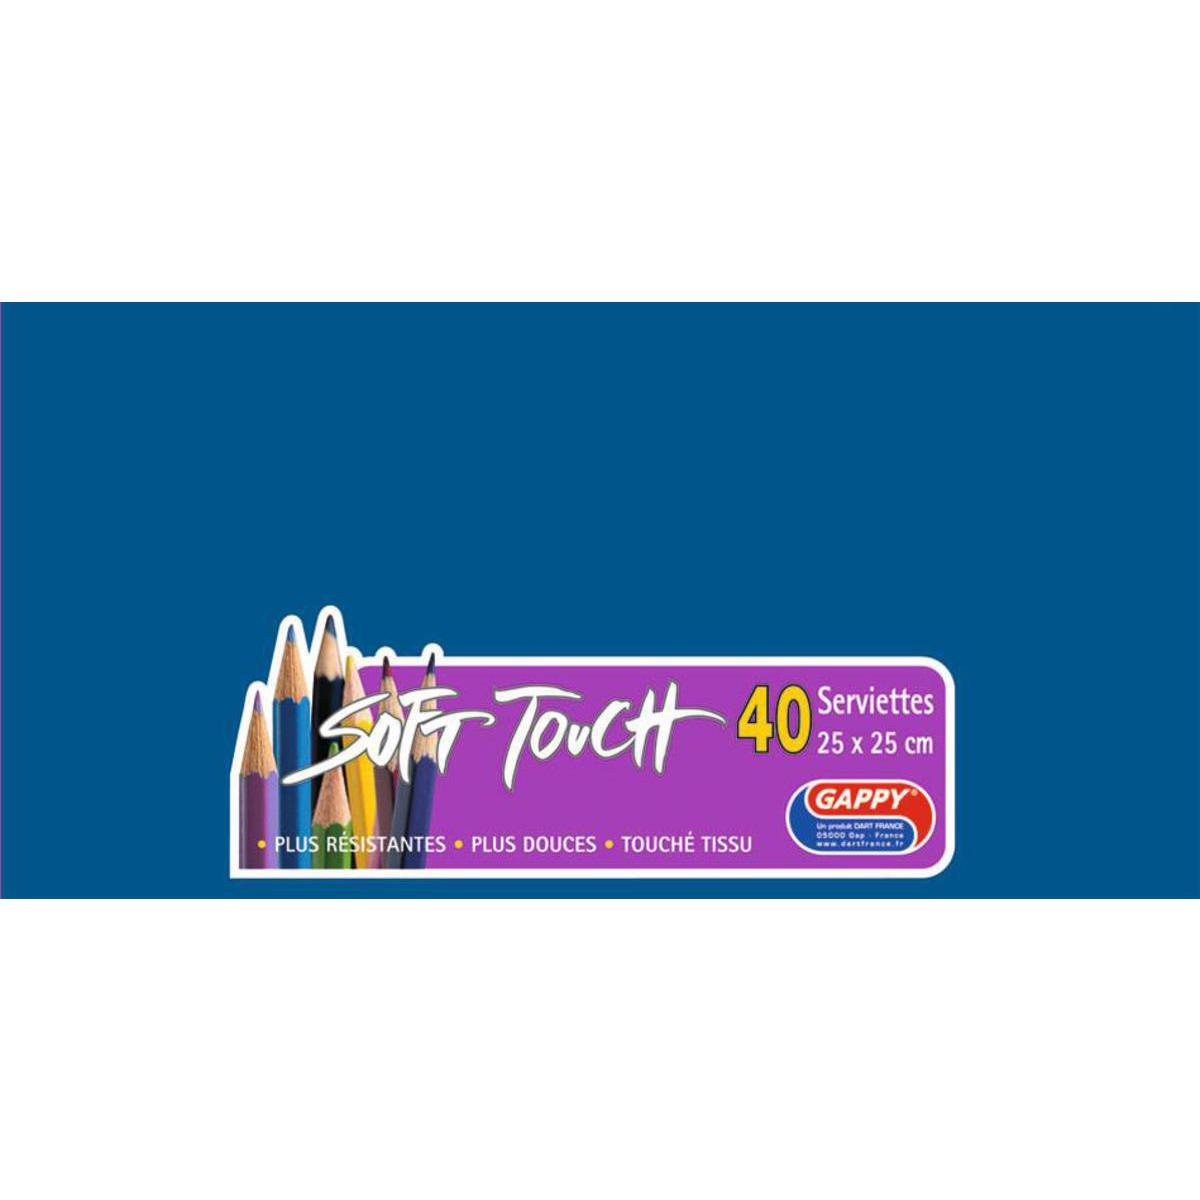 Lot de 40 serviettes Soft Touch Gappy 2 plis - 25 x 25 cm - Pure Ouate de Cellulose - Bleu